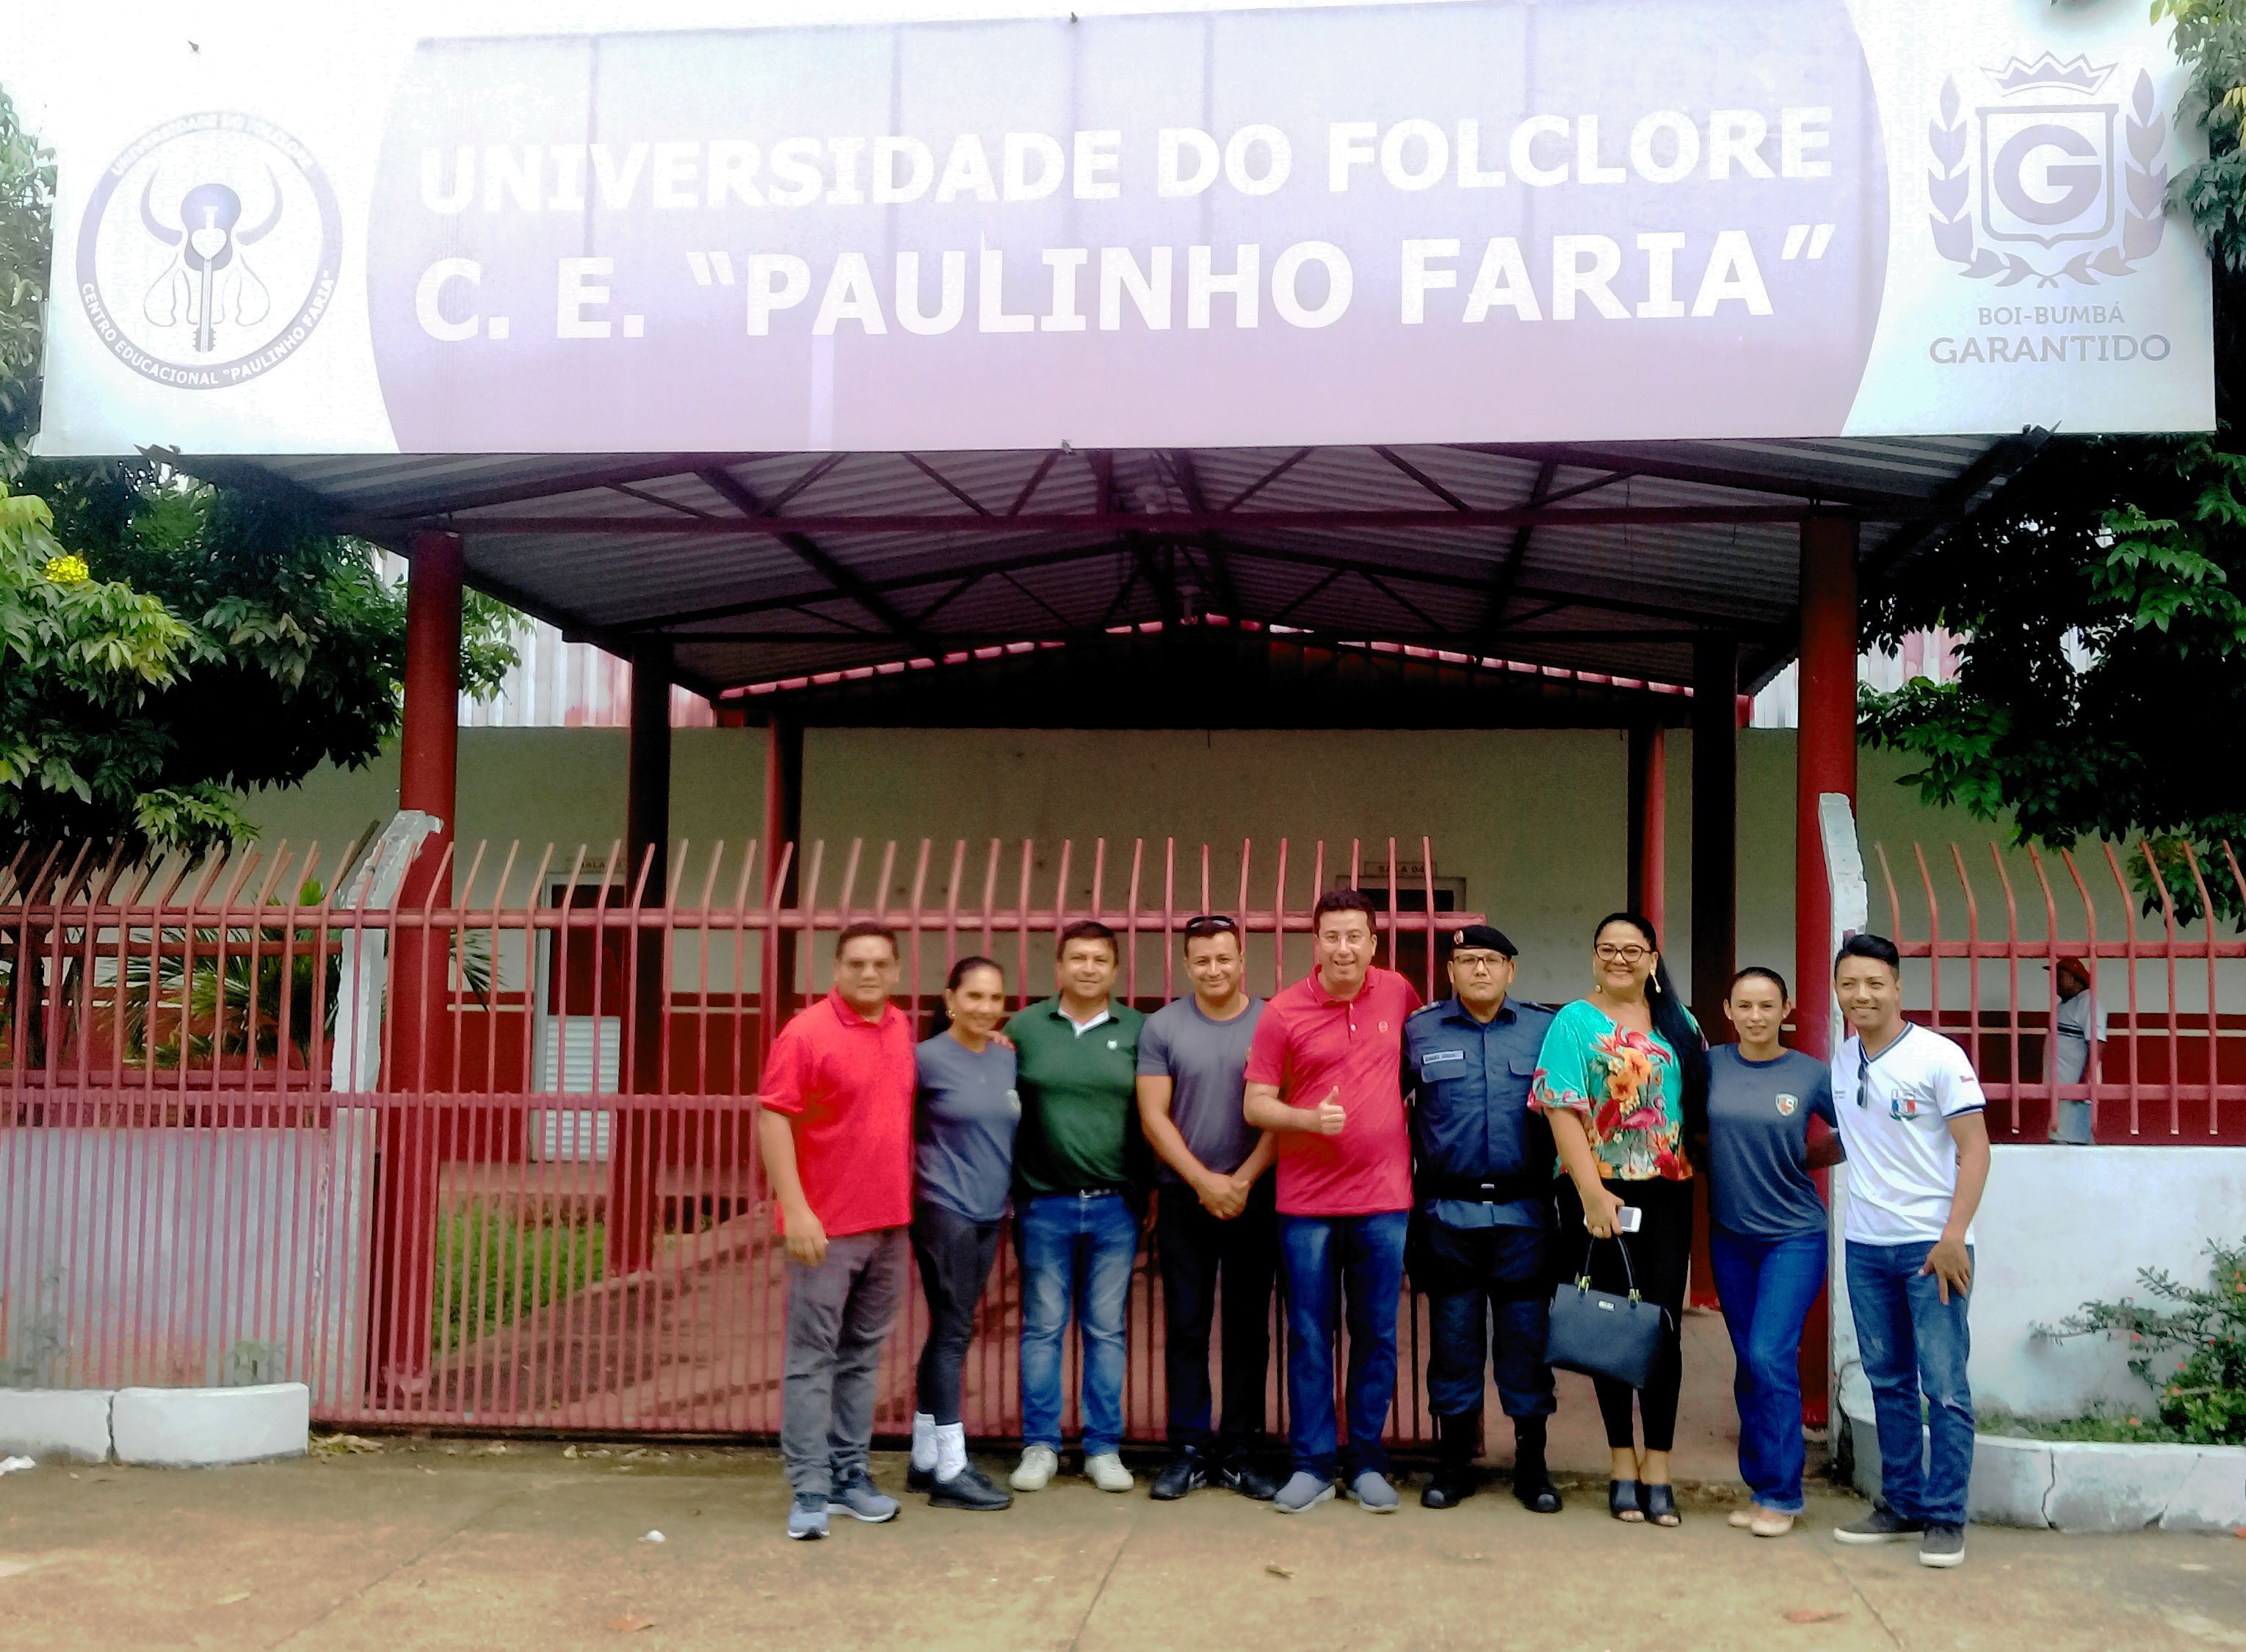 Câmara de Parintins articula estrutura para nova sede do Pelotão Mirim na Universidade do Folclore Paulinho Faria